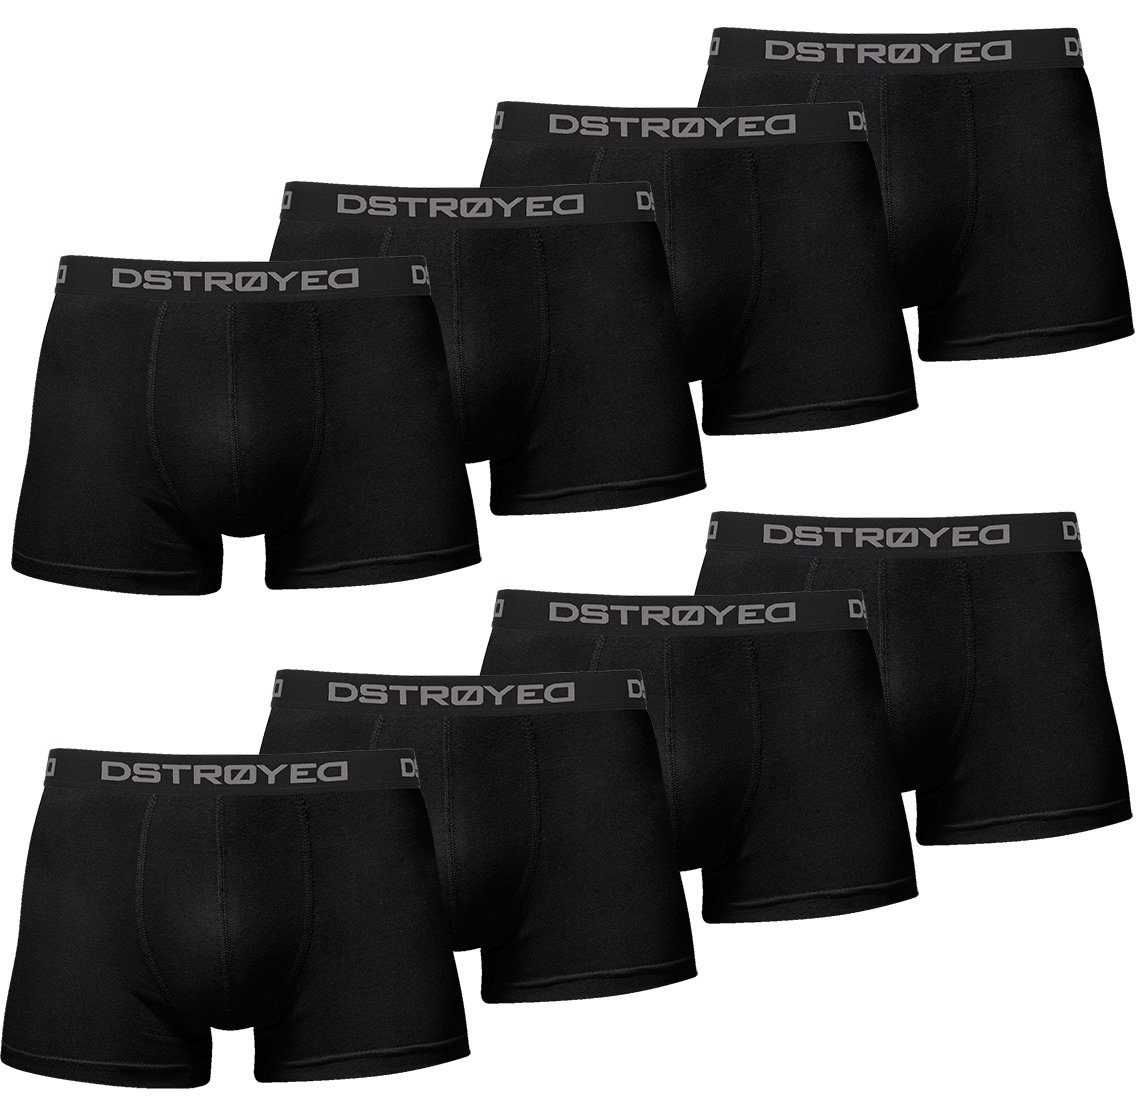 DSTROYED Boxershorts Herren Männer Unterhosen Baumwolle Premium Qualität perfekte Passform (Vorteilspack, 8er, 8er Pack) 316h-schwarz